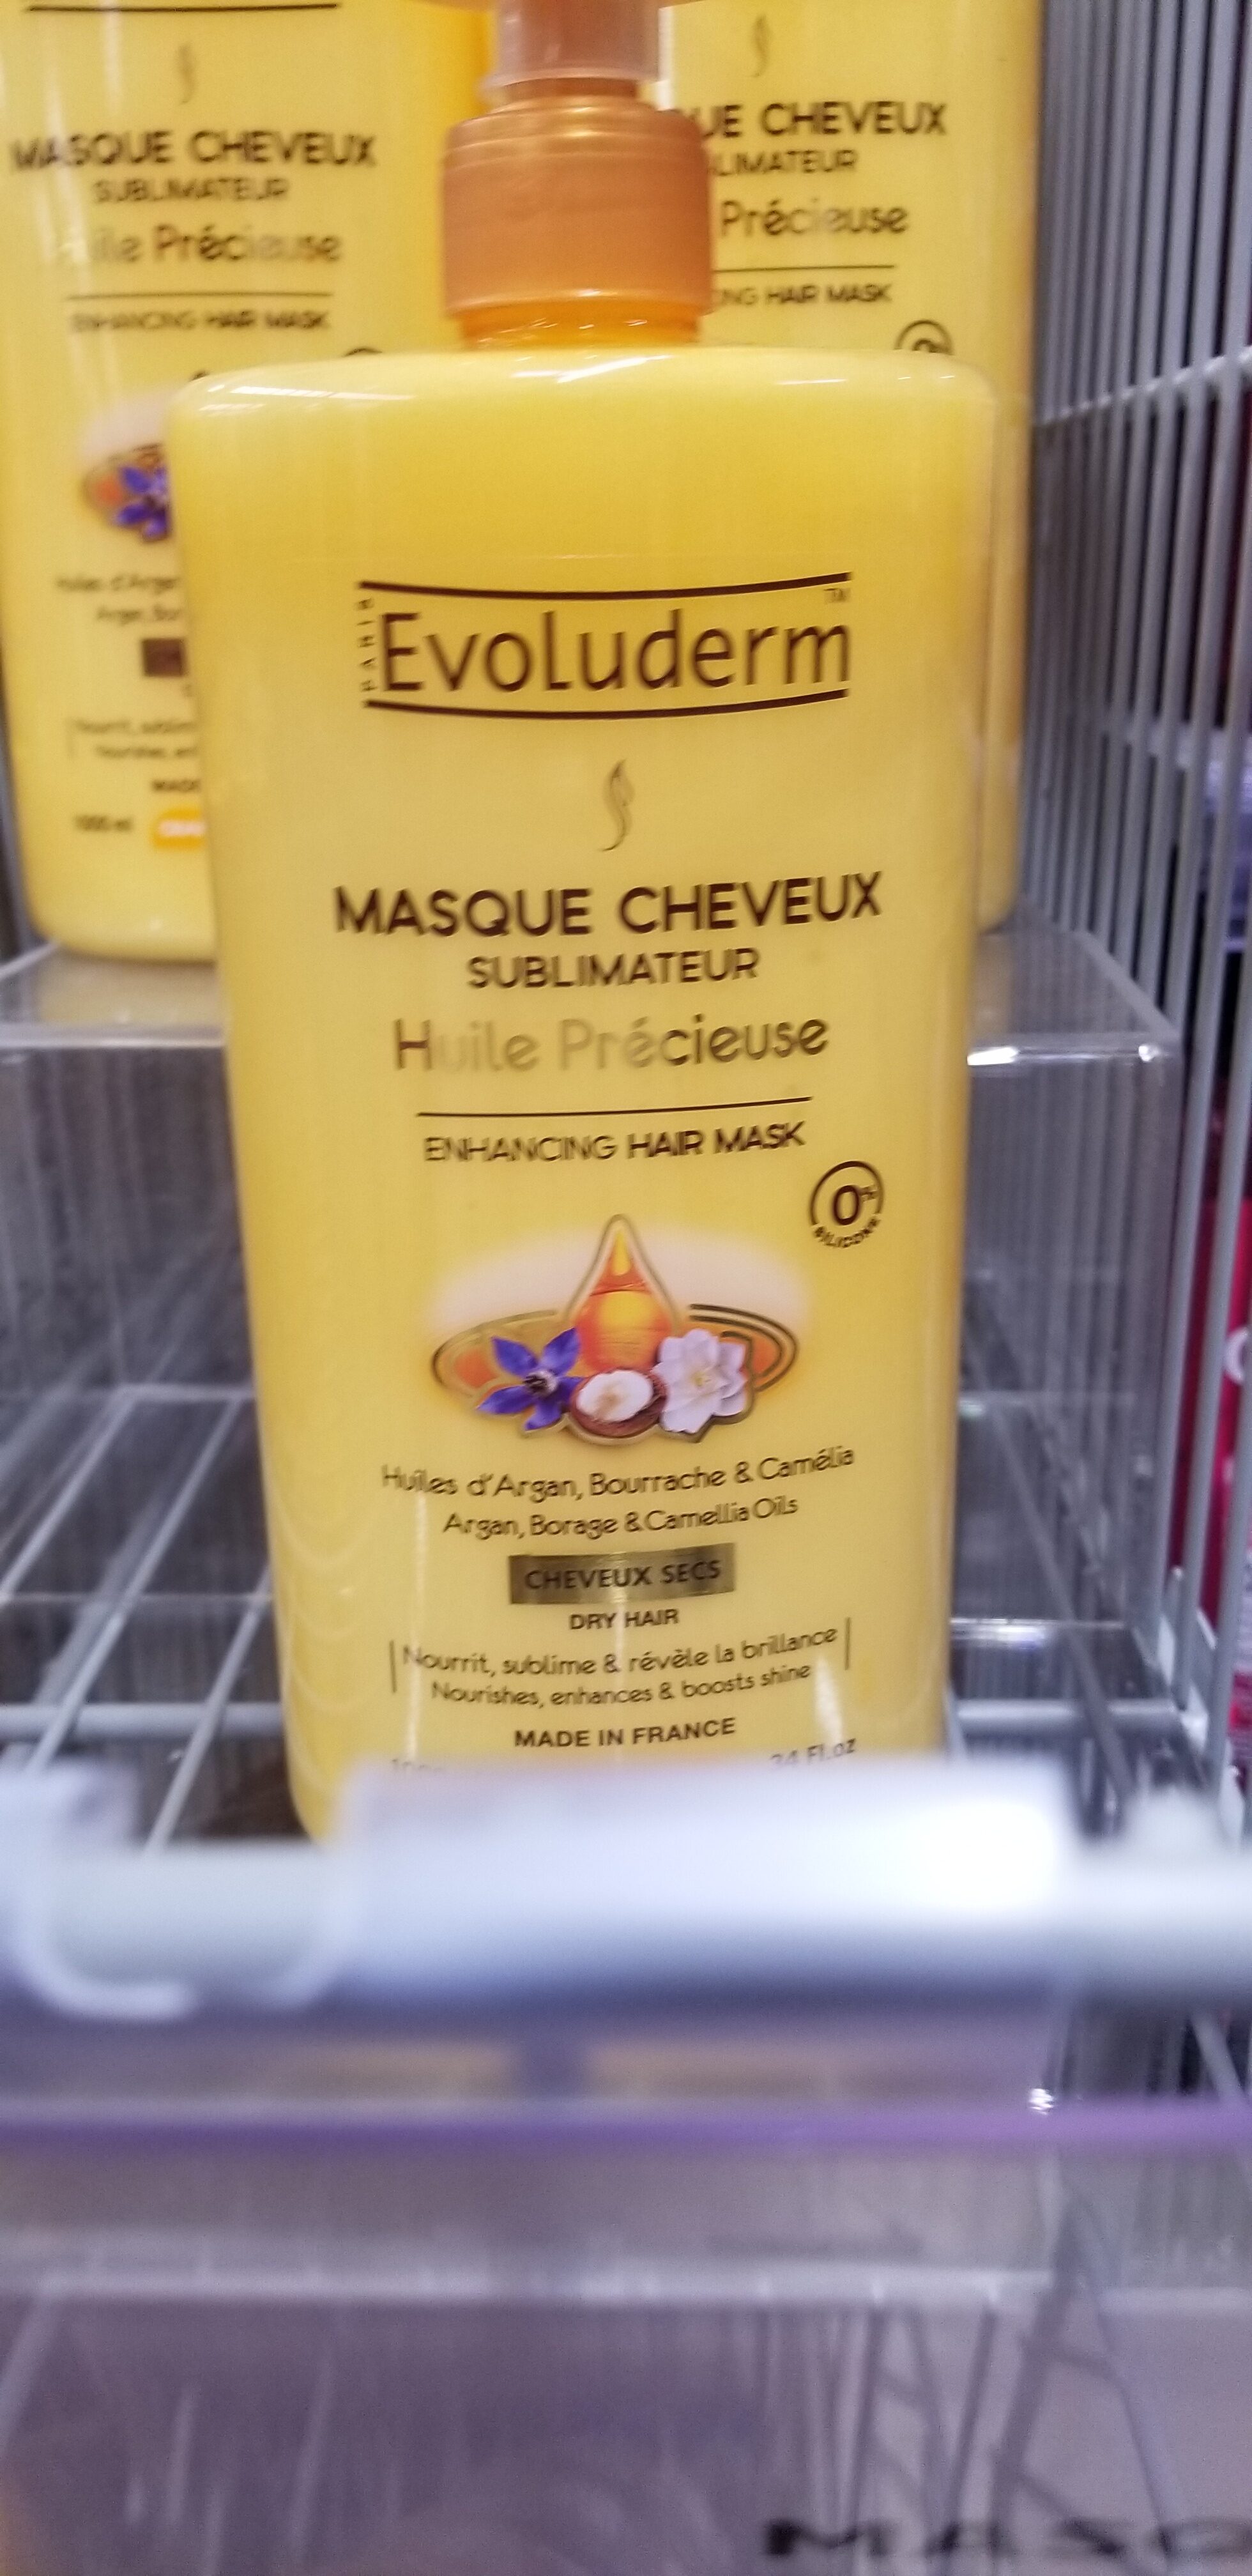 Masque cheveux sublimateur - Product - fr